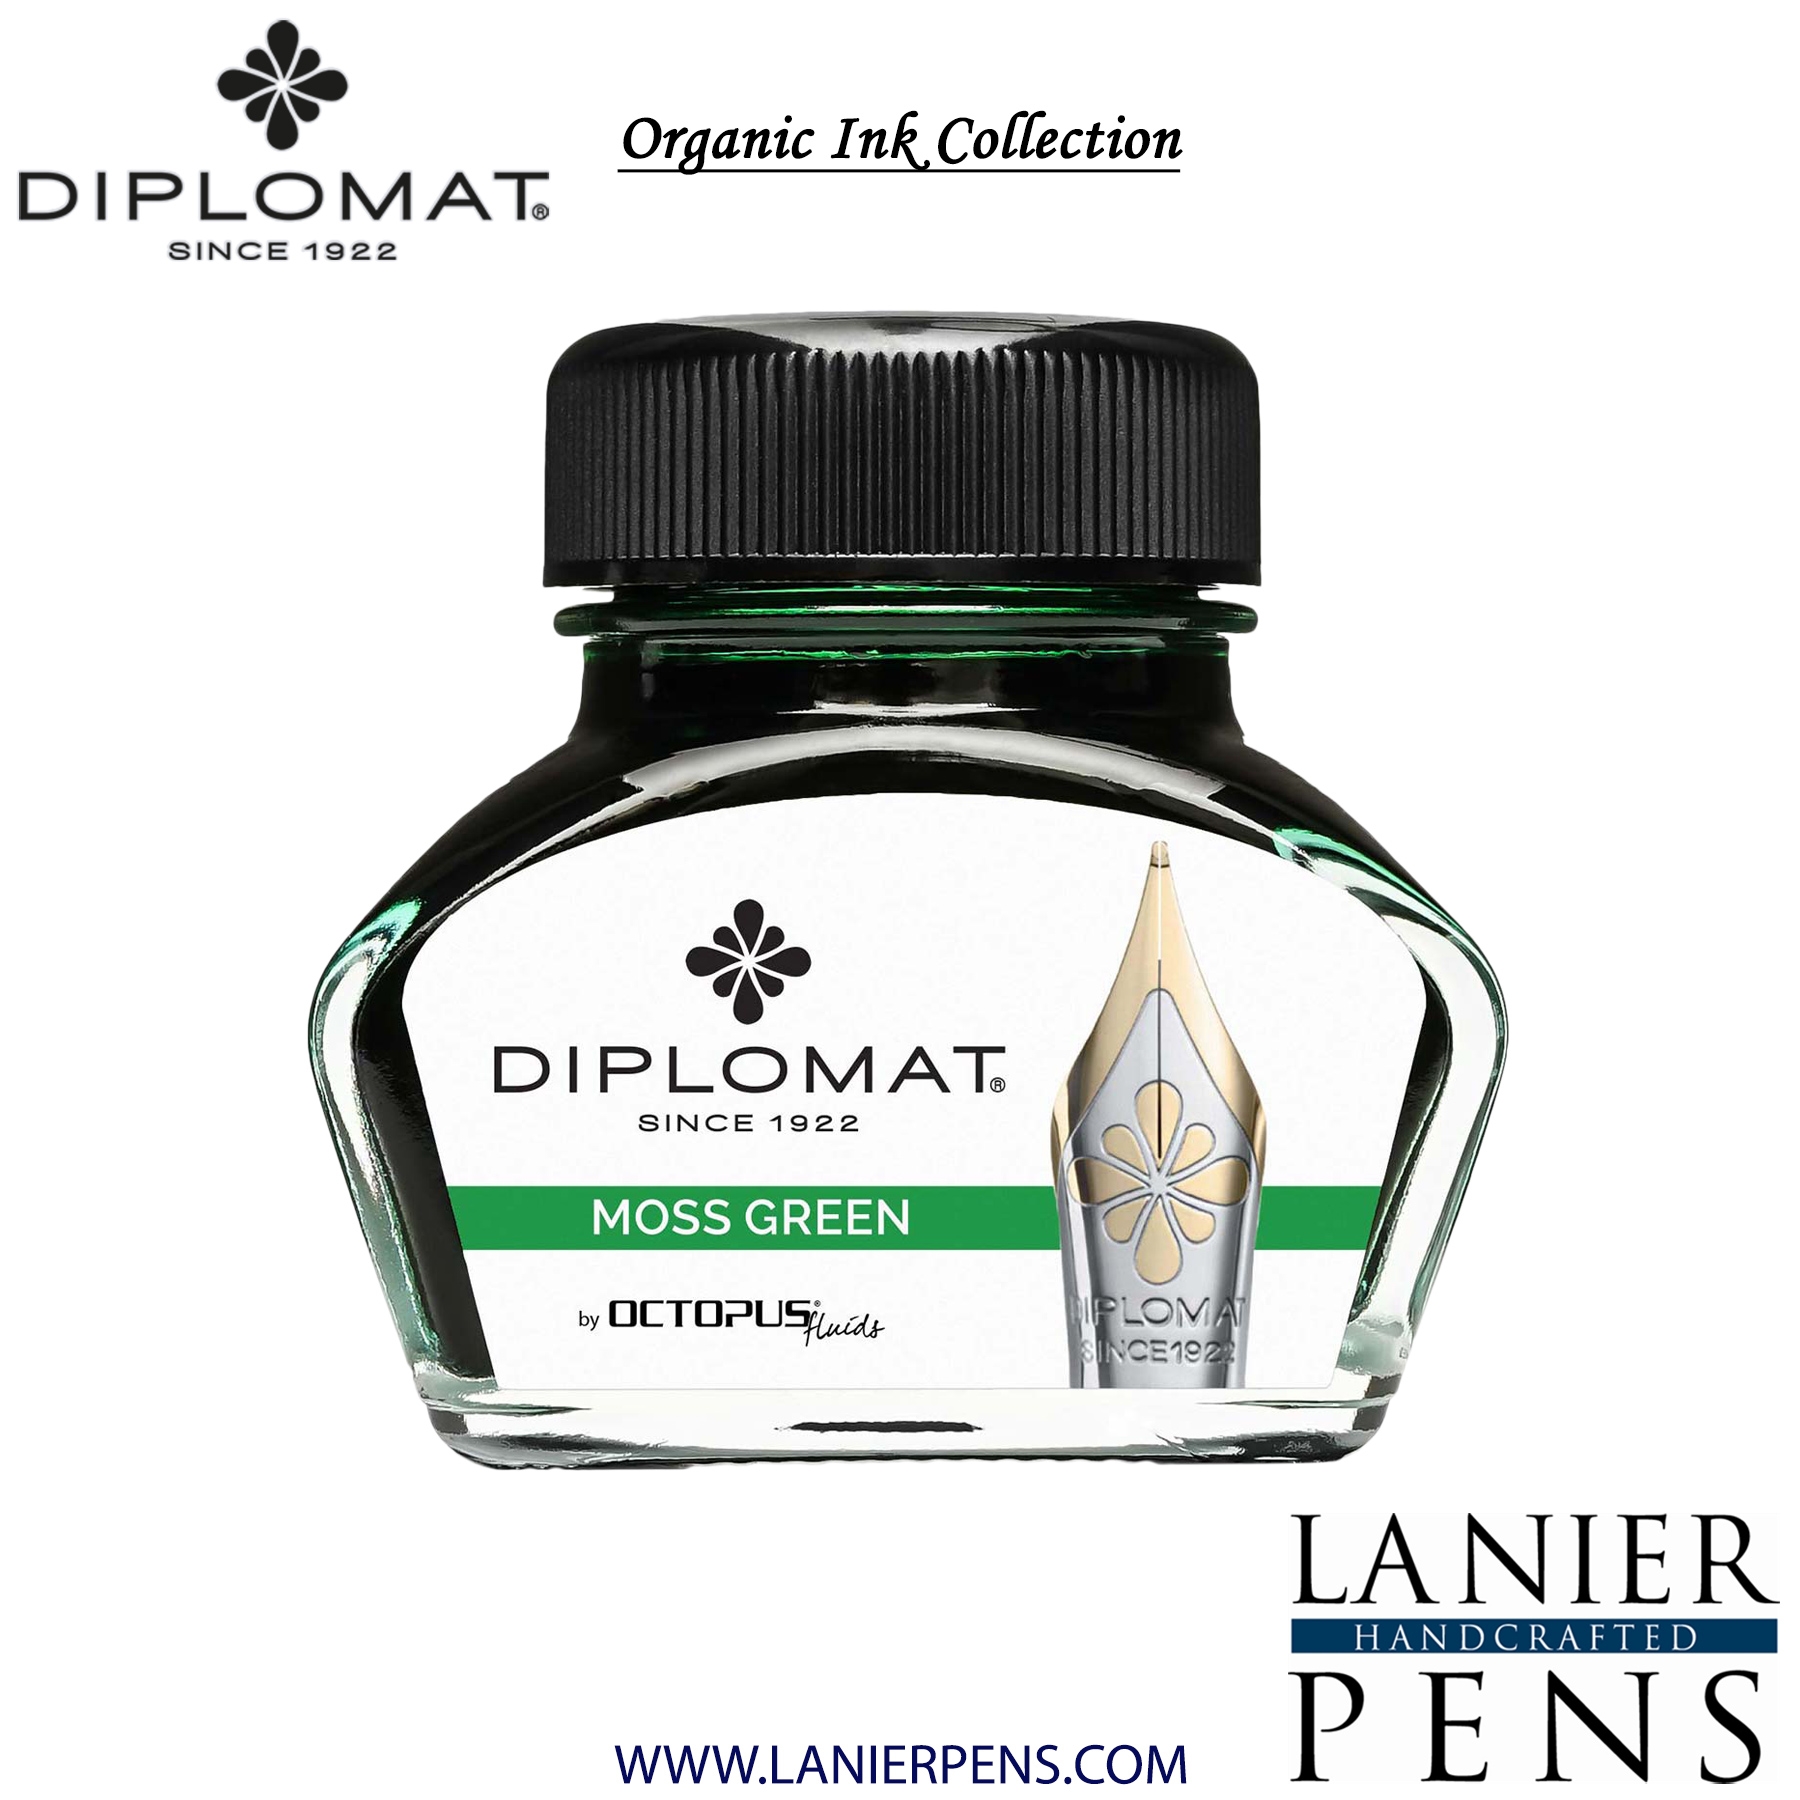 Diplomat Moss Green Ink Bottle, 30ml by Lanier Pens, lanierpens, lanierpens.com, wndpens, WOOD N DREAMS, Pensbylanier